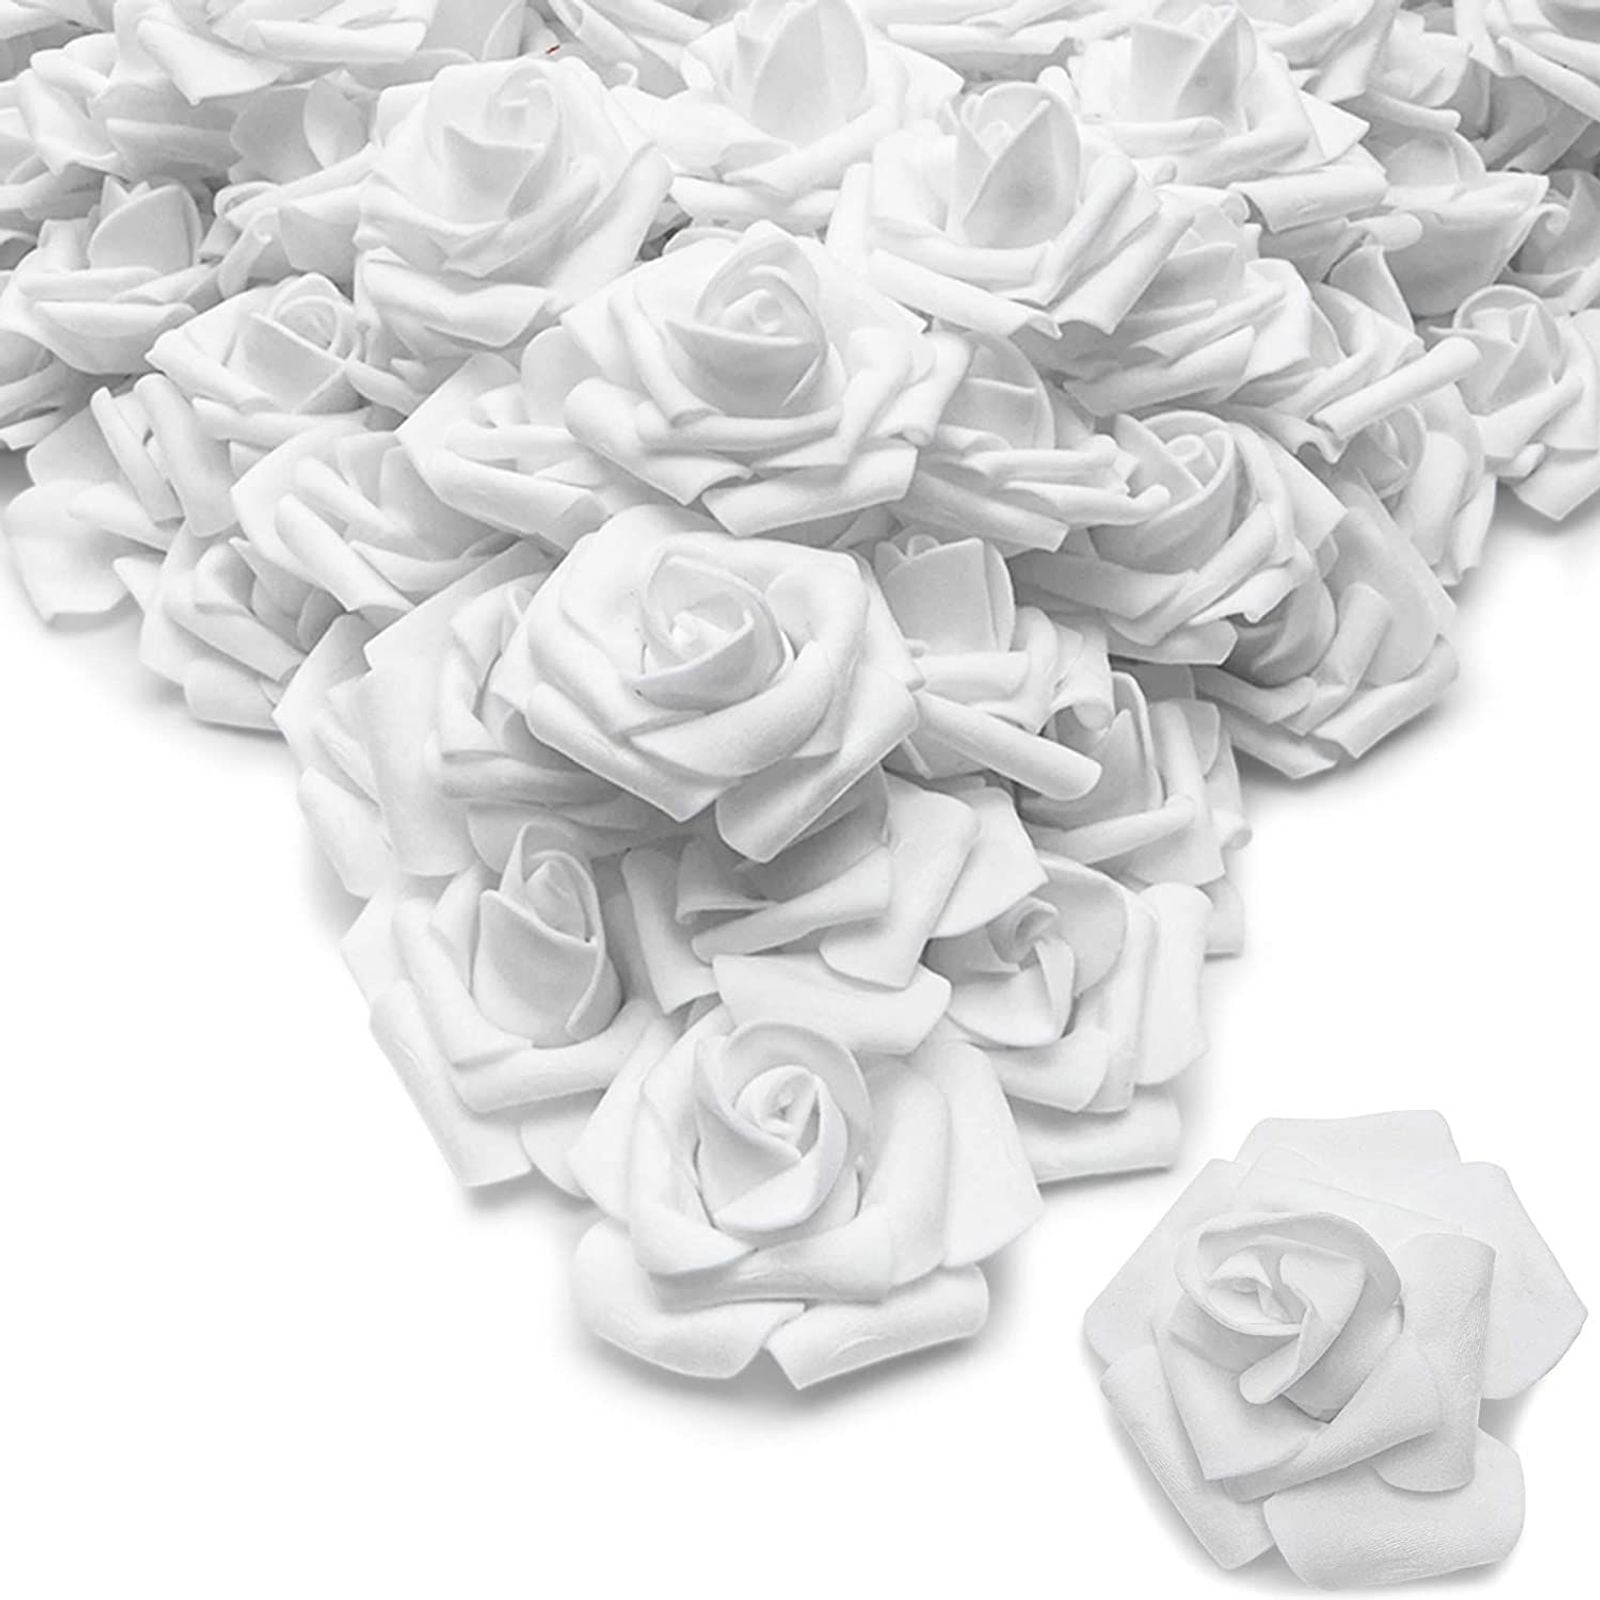 Rose  Artifical Fake 12 Autumn Snowflake Rose Flower Home Office Decor UK SELLER 